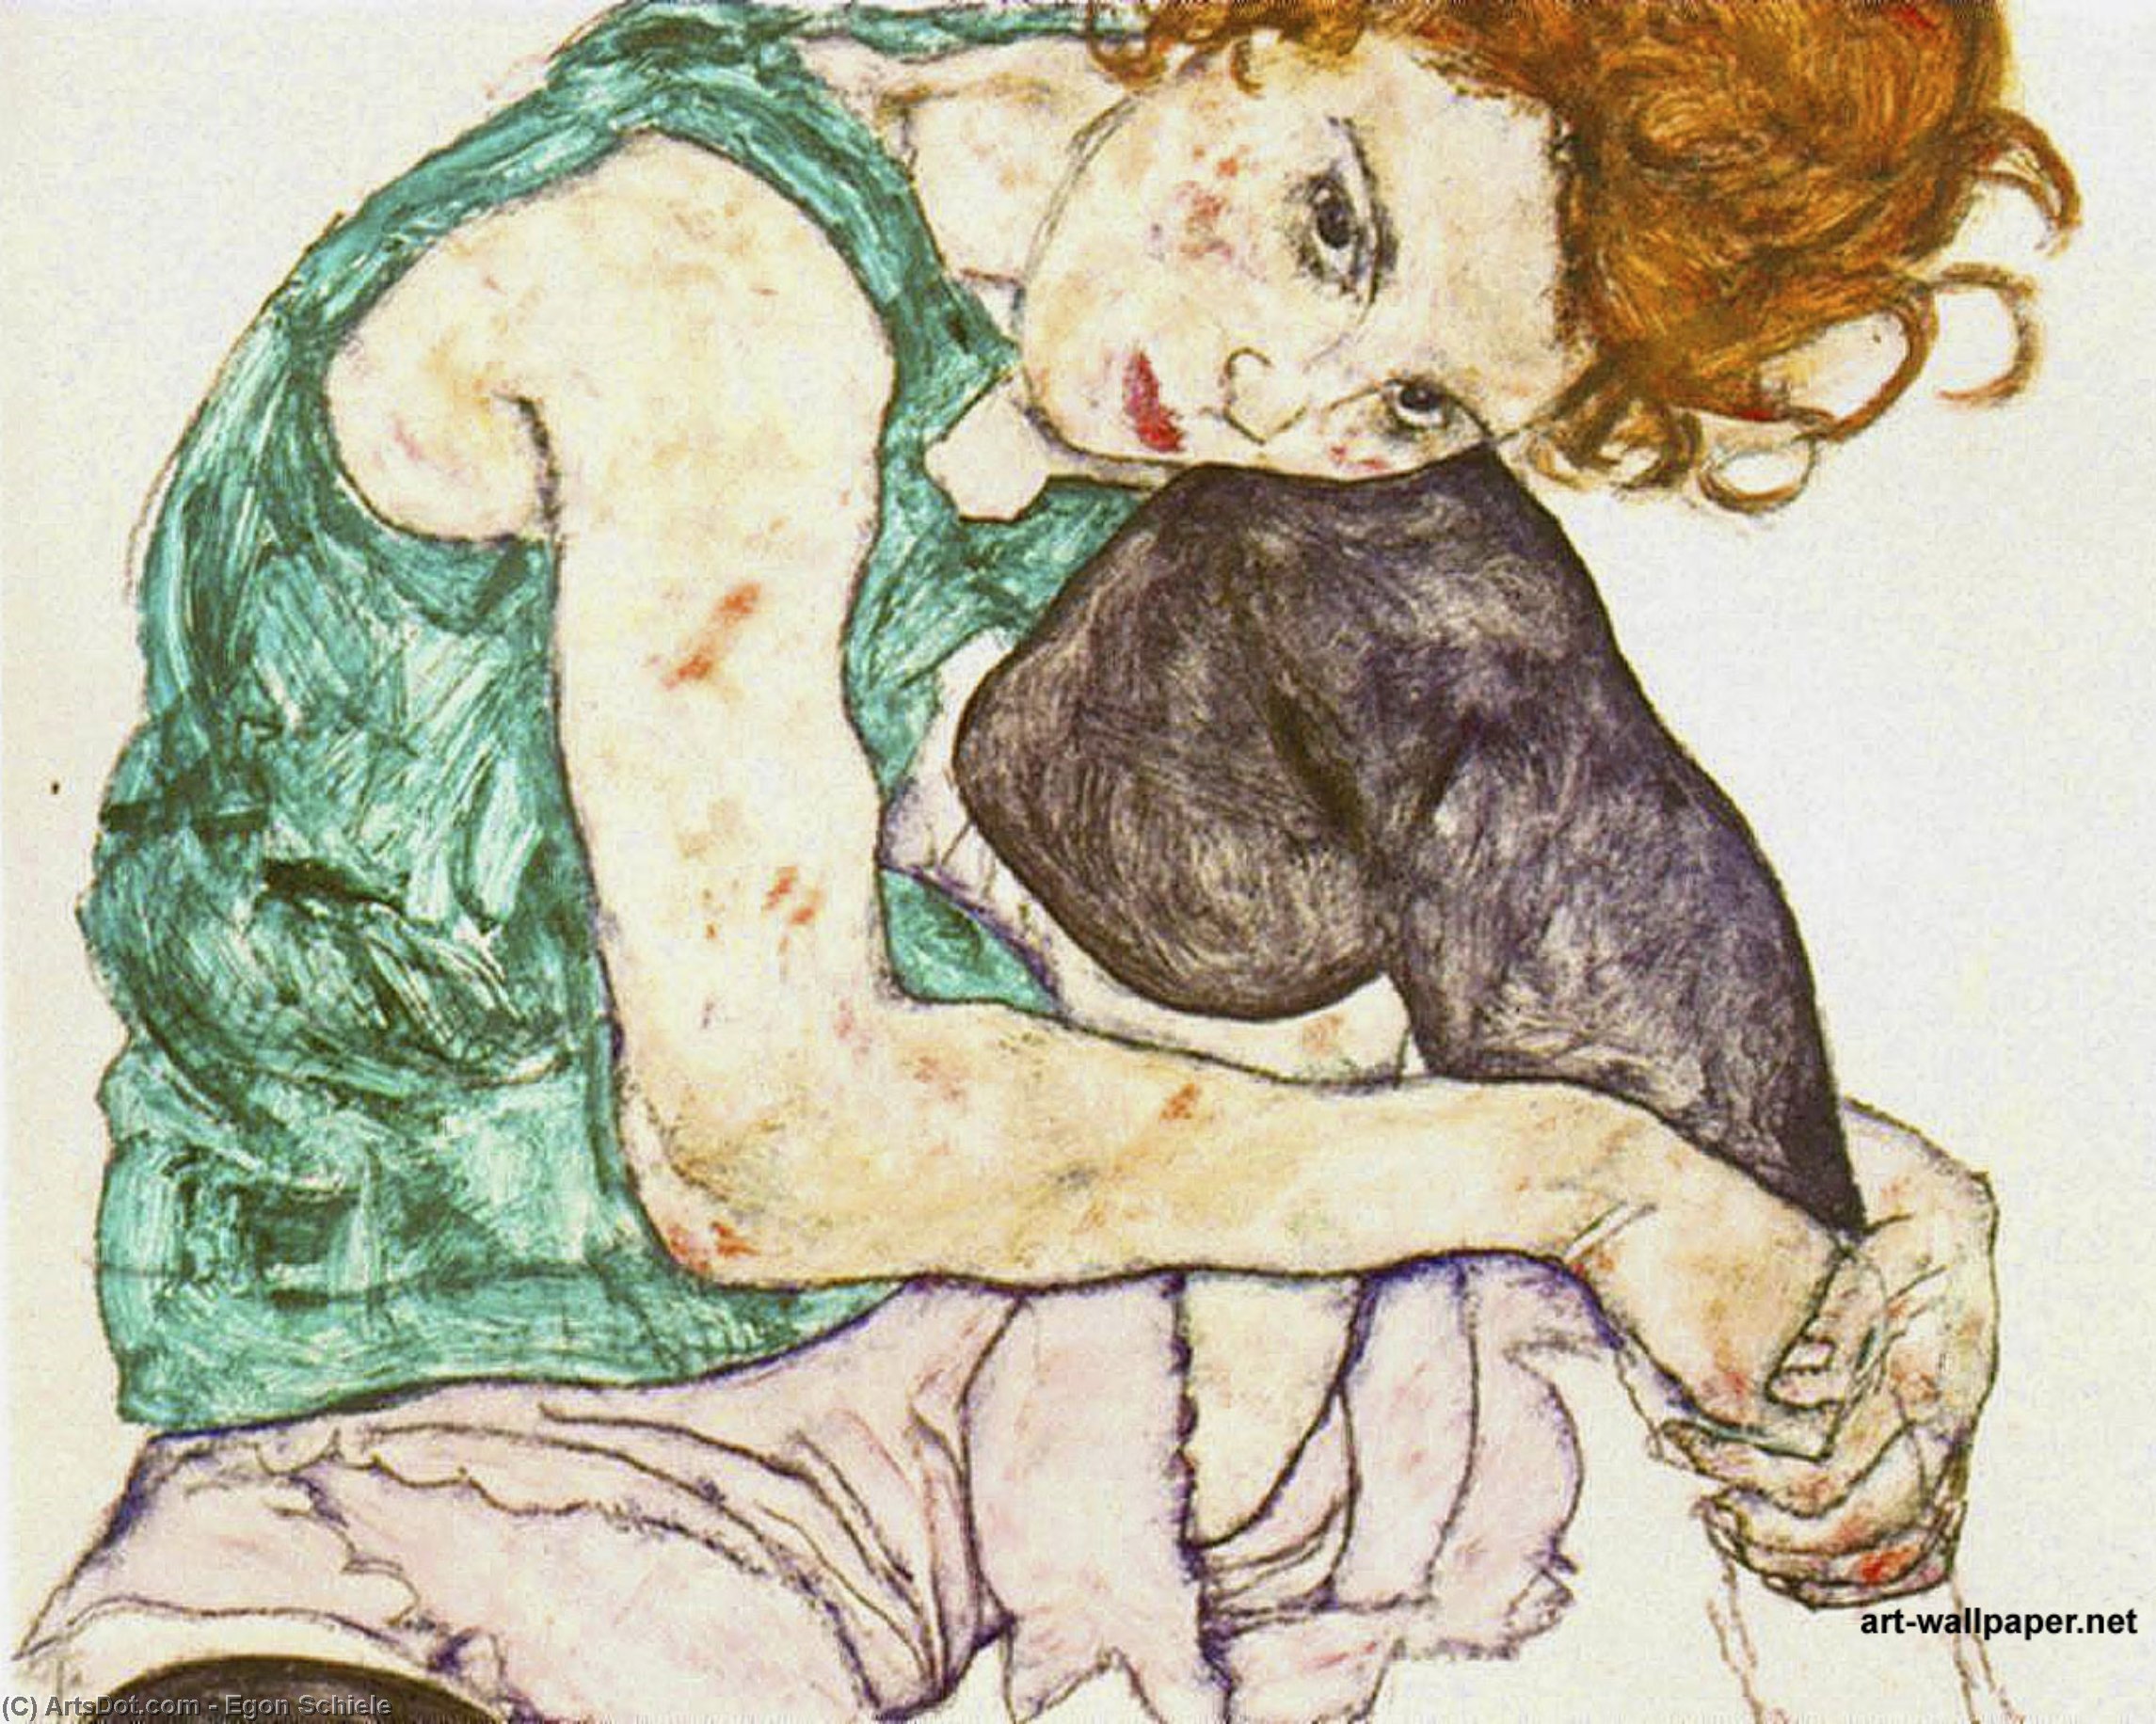 WikiOO.org - Εγκυκλοπαίδεια Καλών Τεχνών - Ζωγραφική, έργα τέχνης Egon Schiele - Sitting woman with legs drawn up,1917, narodni galer